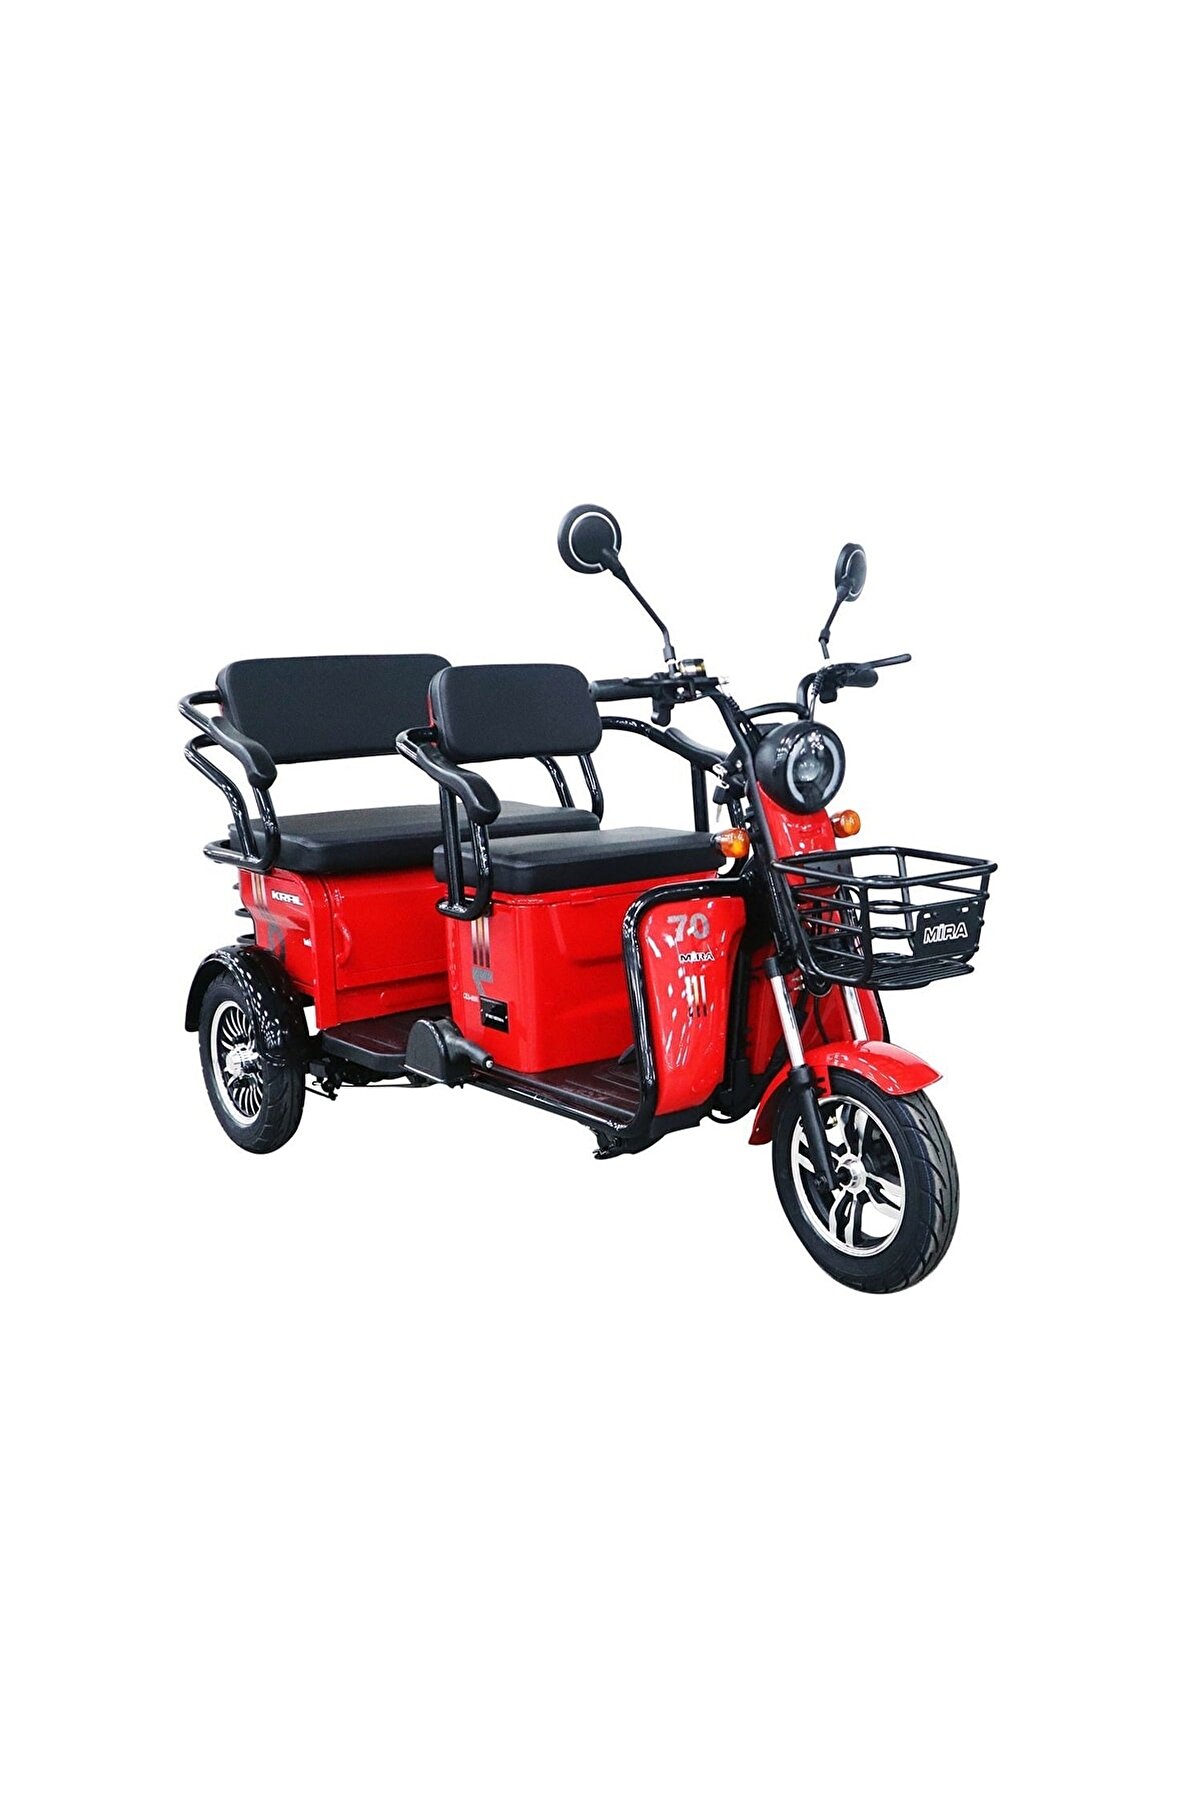 Kral Mira 3 Tekerli Elektrikli Motosiklet - 60v 20ah X 5 Akülü - Kırmızı